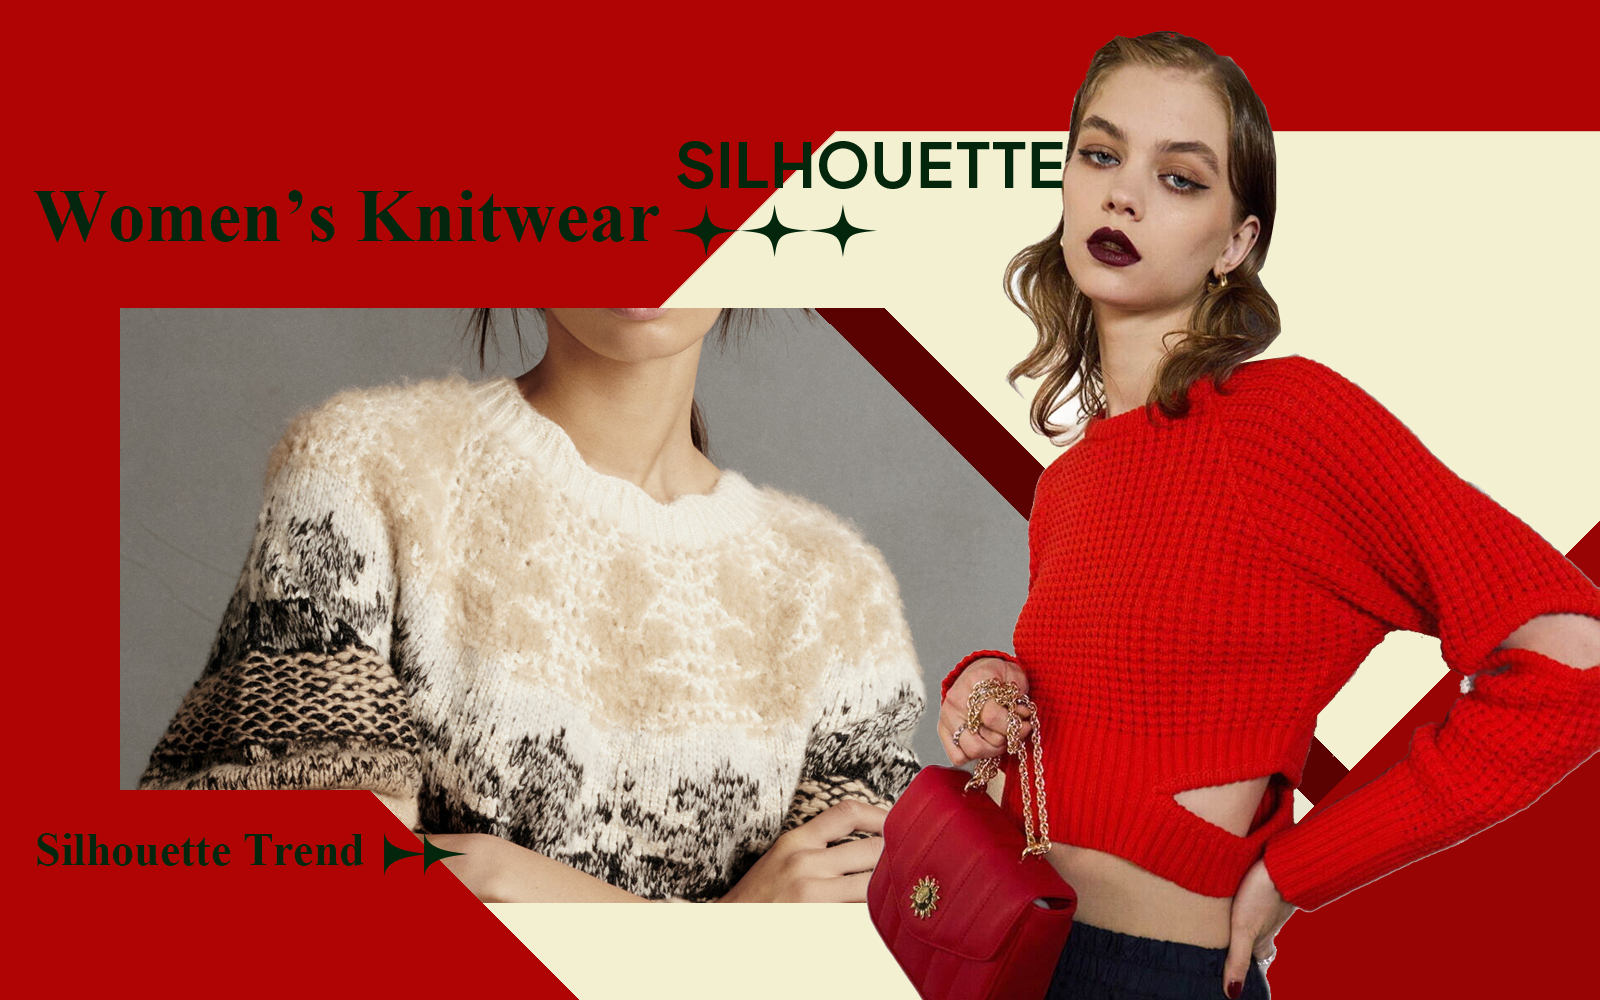 A/W 24/25 Silhouette Trend for Women's Knitwear